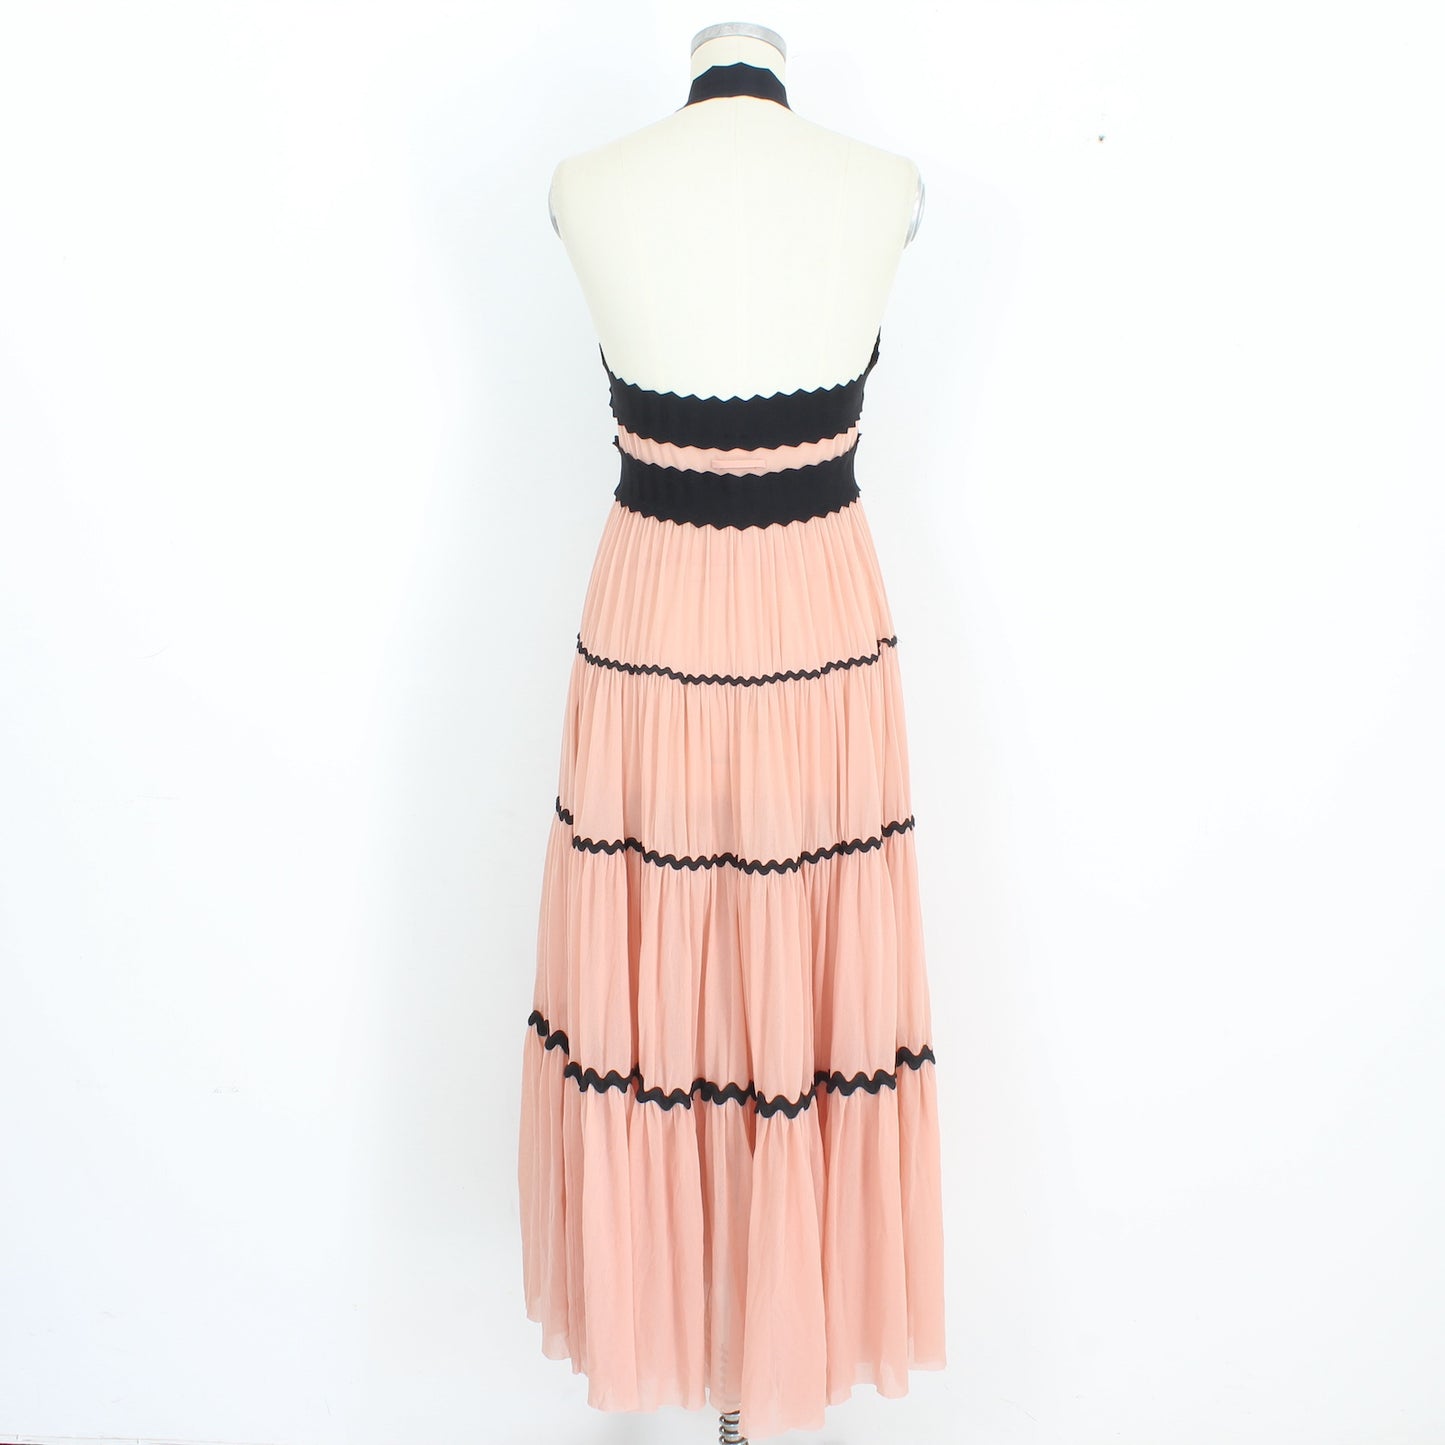 Jean Paul Gaultier Soleil Pink Fuzzi Long Dress 2000s